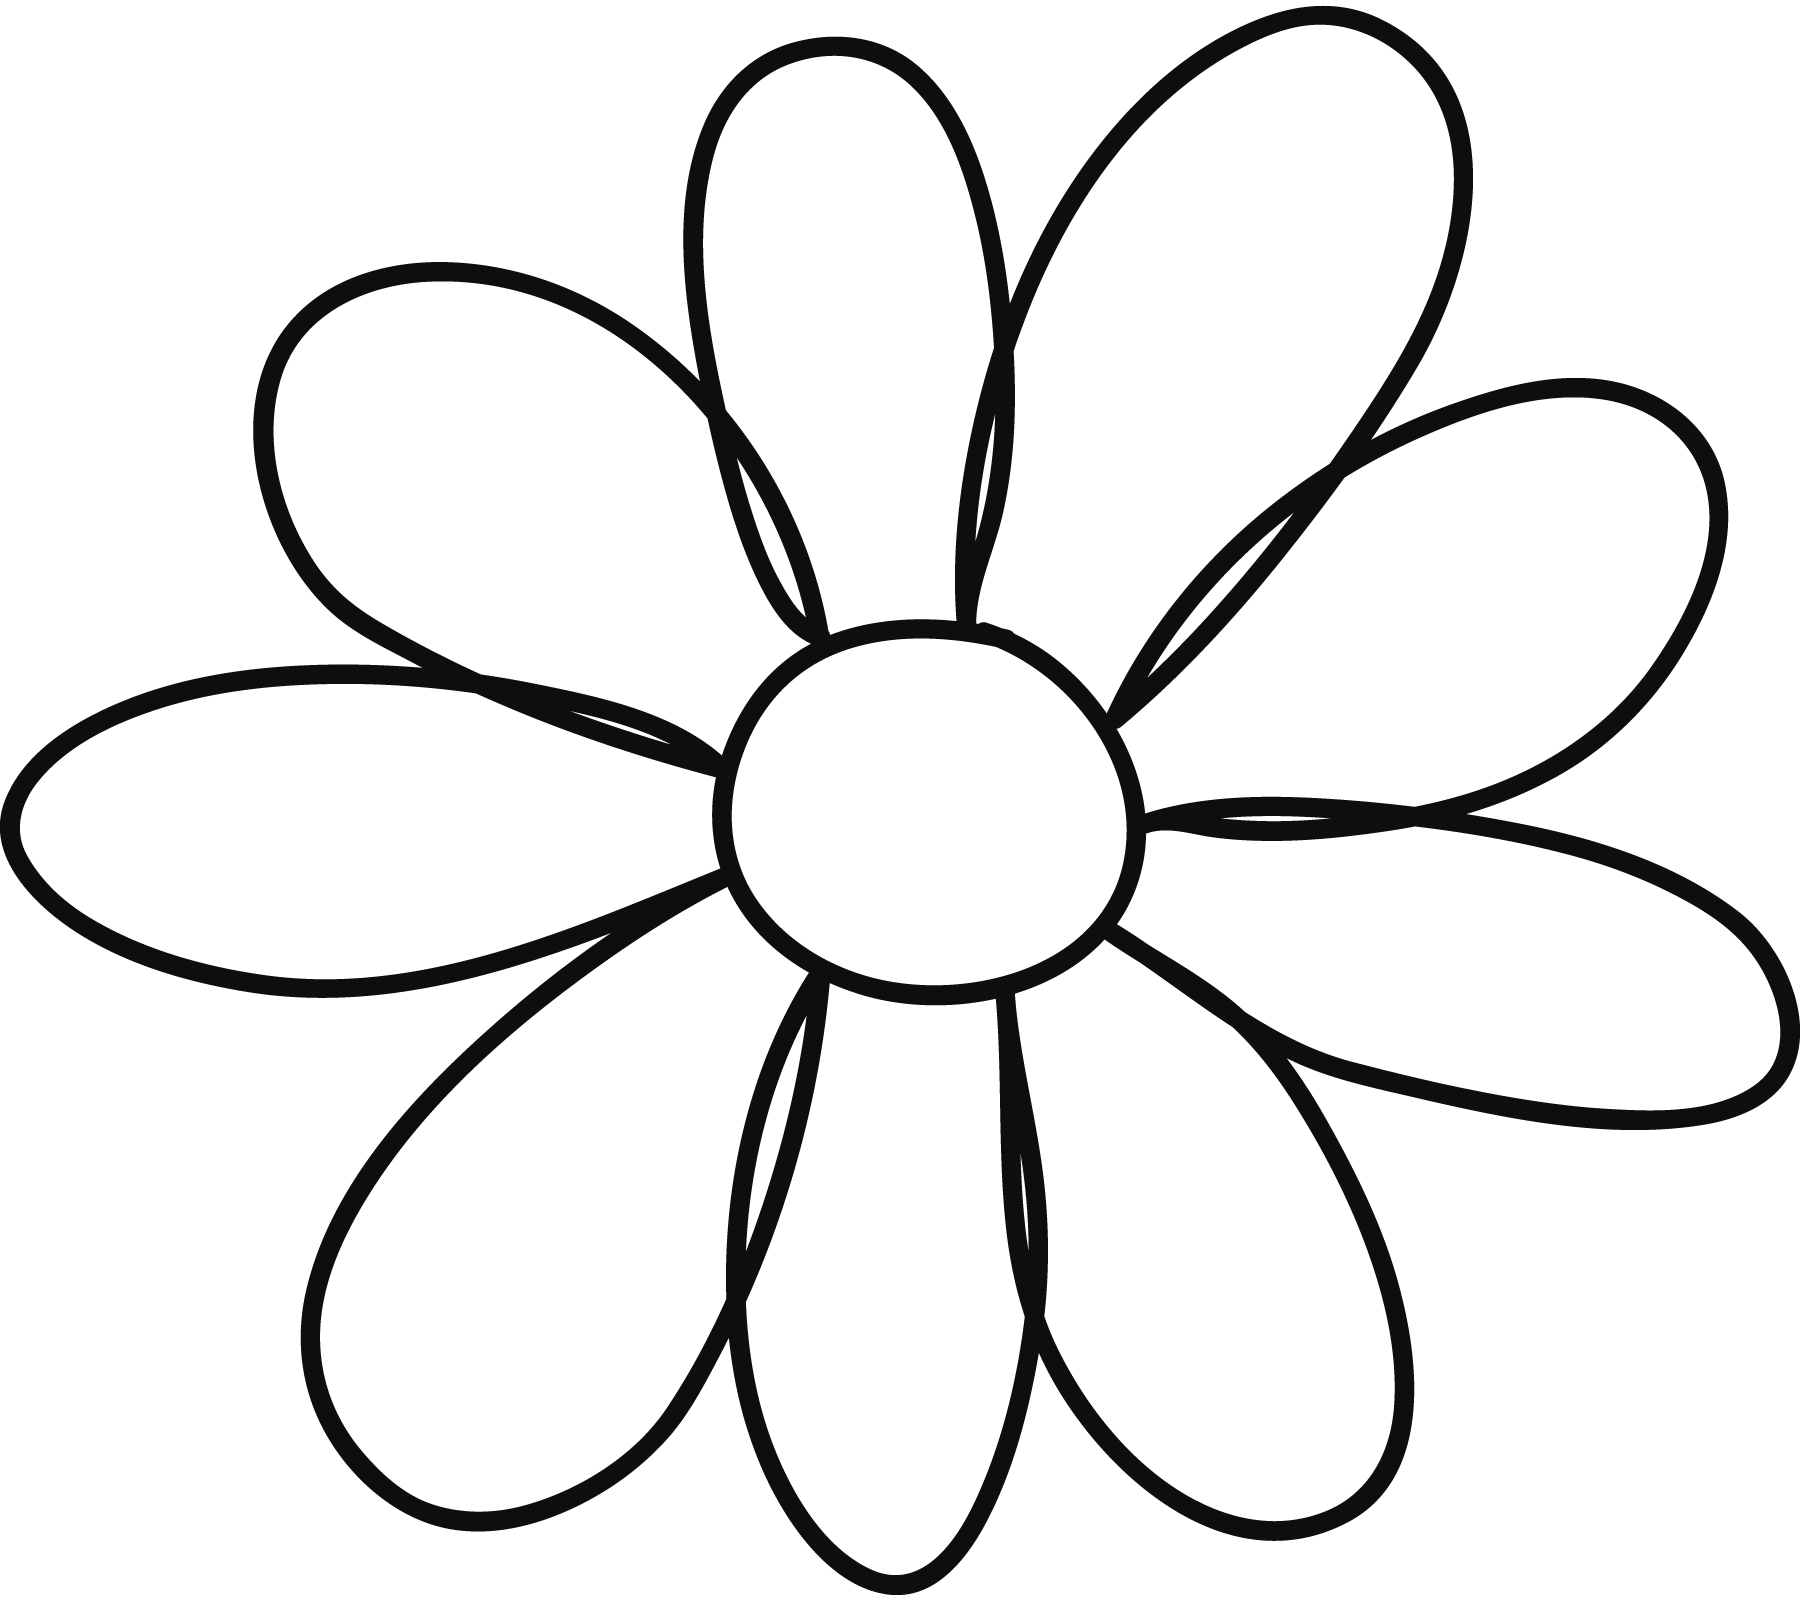 Printable Flower Petal Template Pattern